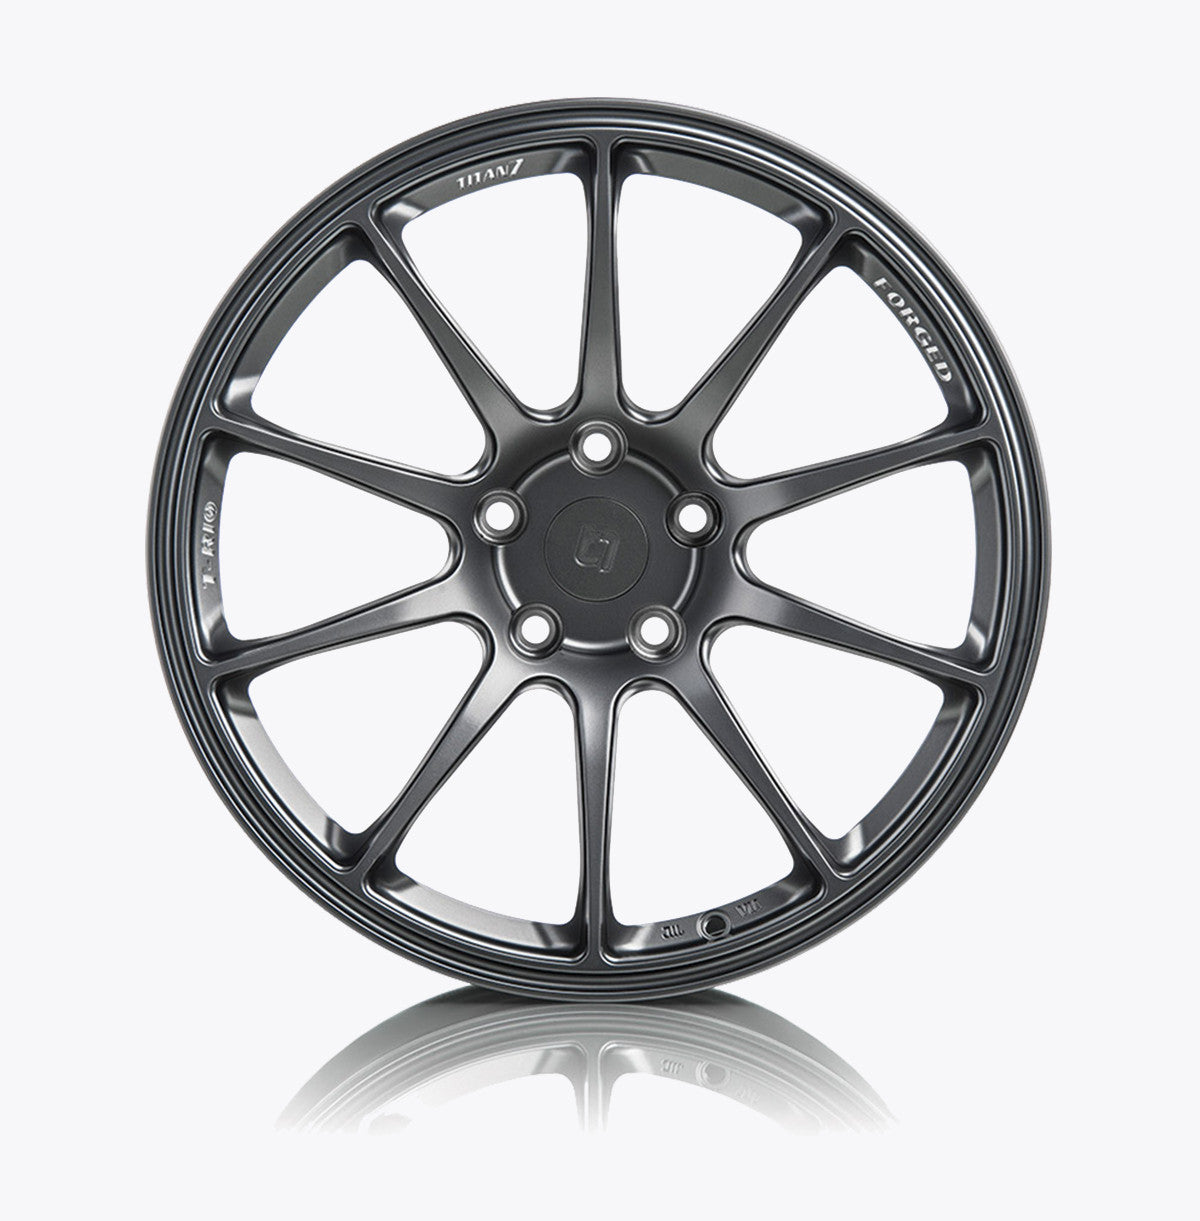 Titan7 T-R10 Forged 10 Spoke wheels for '01-'06 BMW E46 M3 | 5x120 |